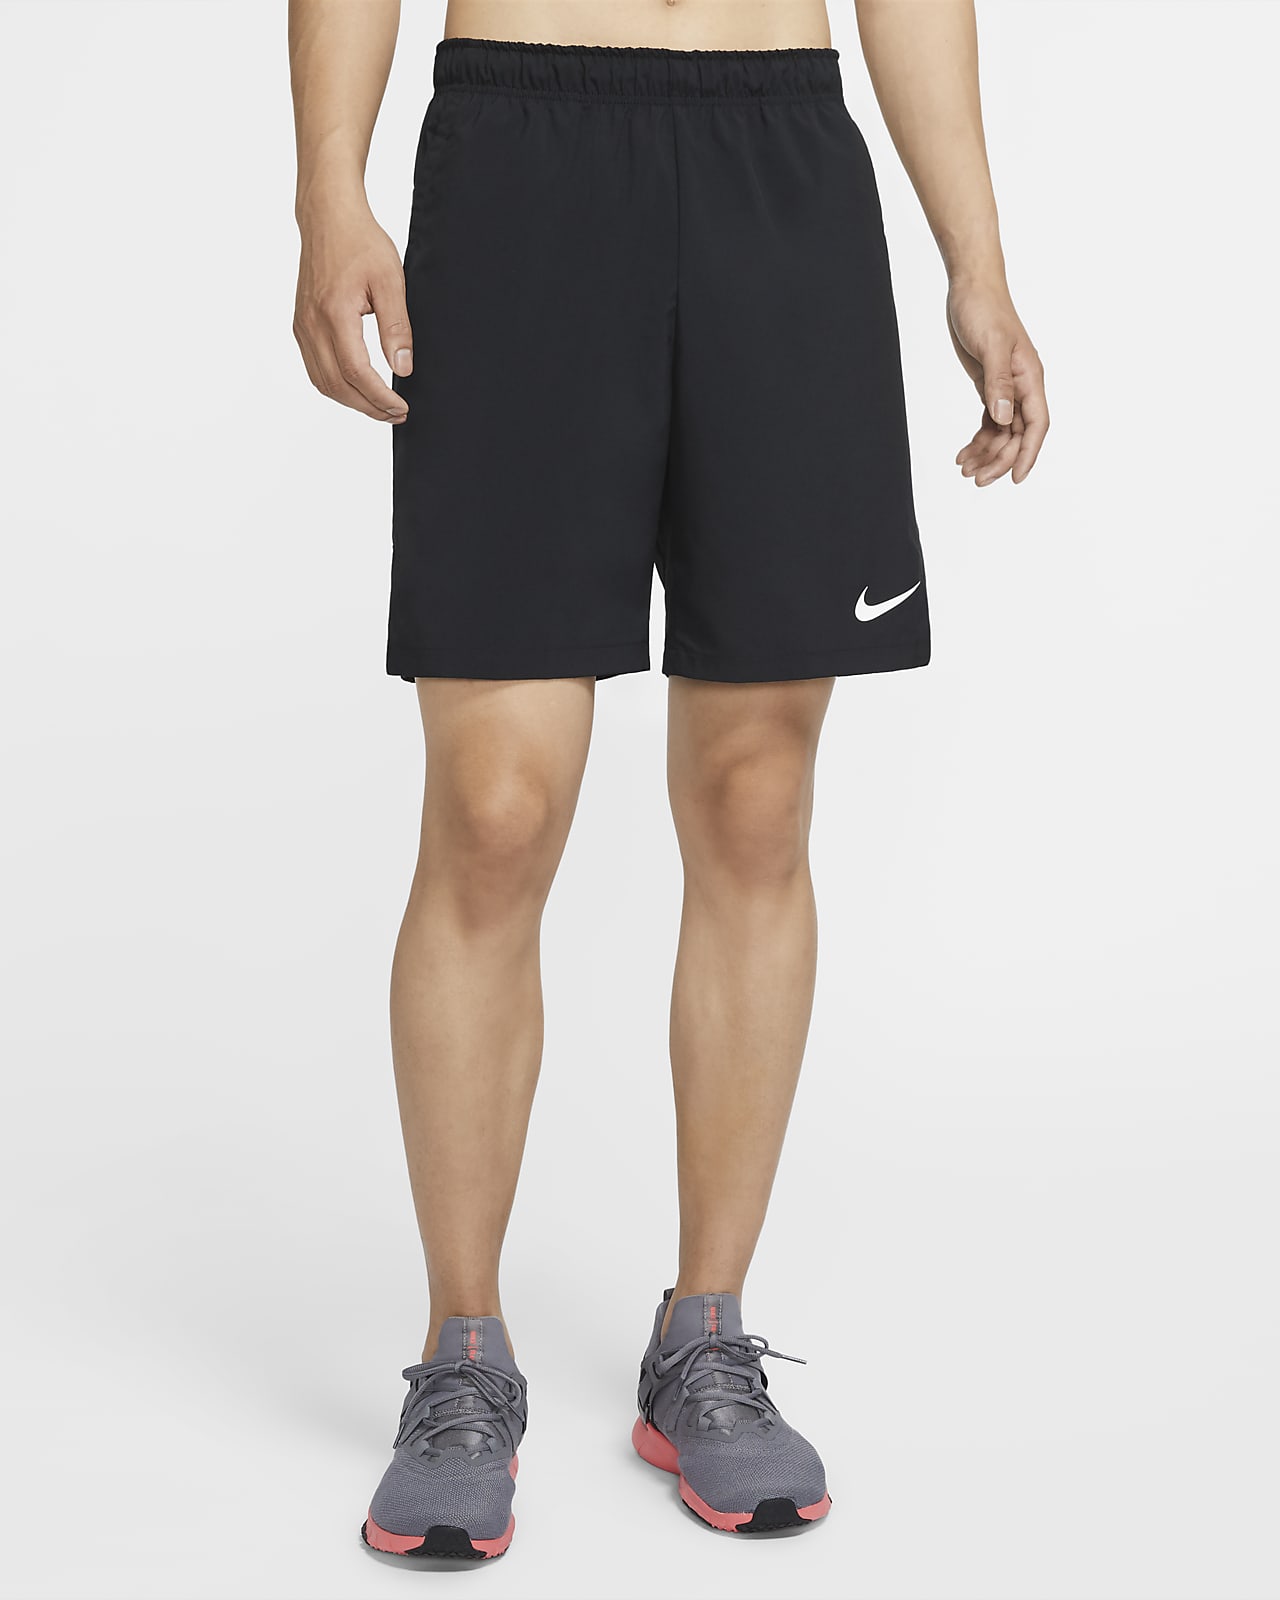 Ανδρικό υφαντό σορτς προπόνησης Nike Flex